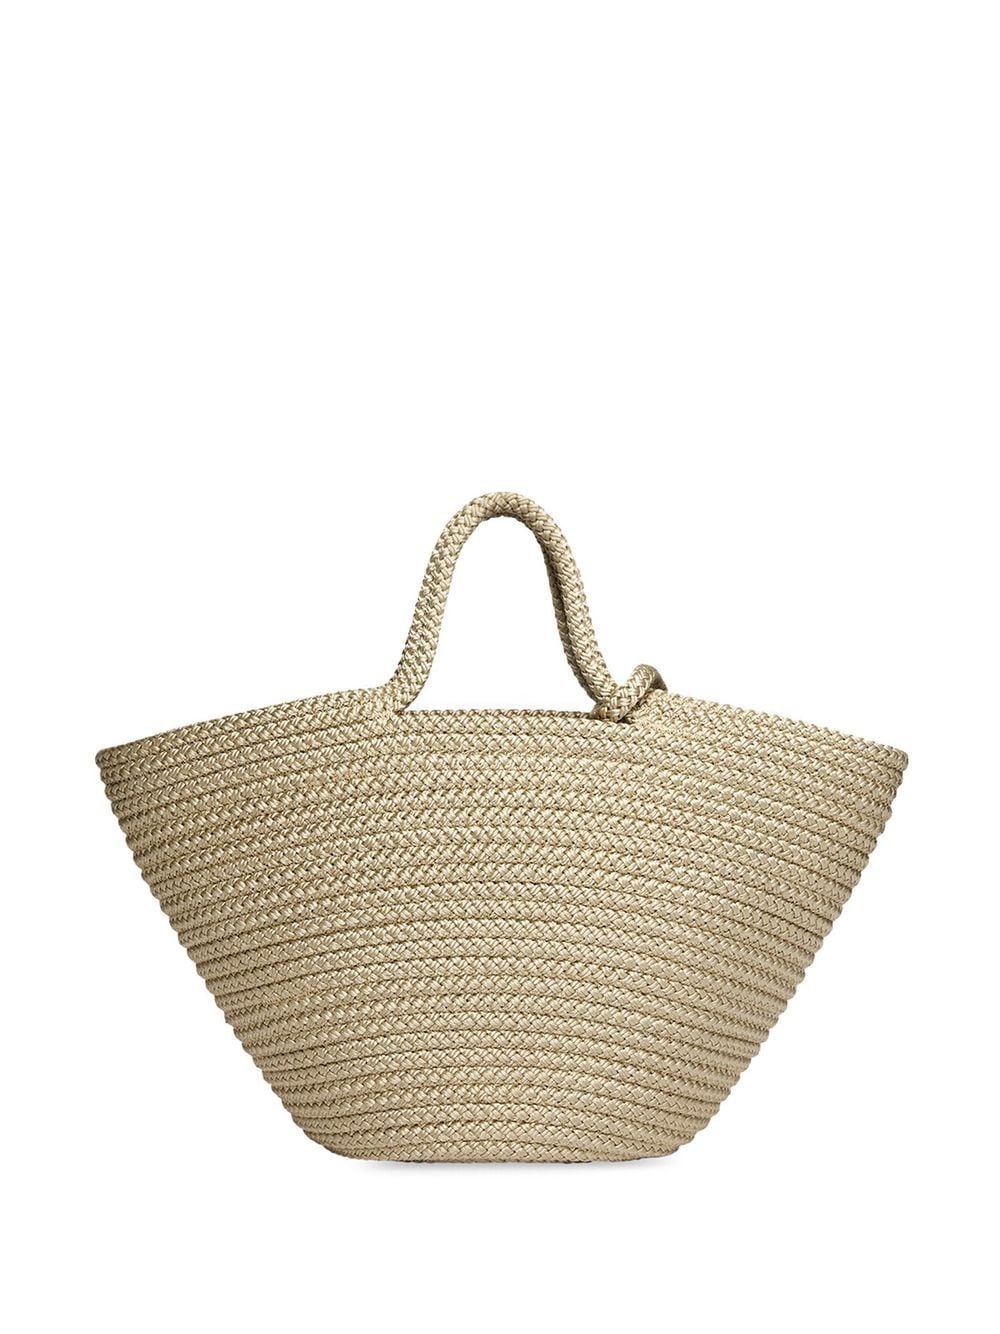 Balenciaga Ibiza Woven Basket Bag In Cream | ModeSens